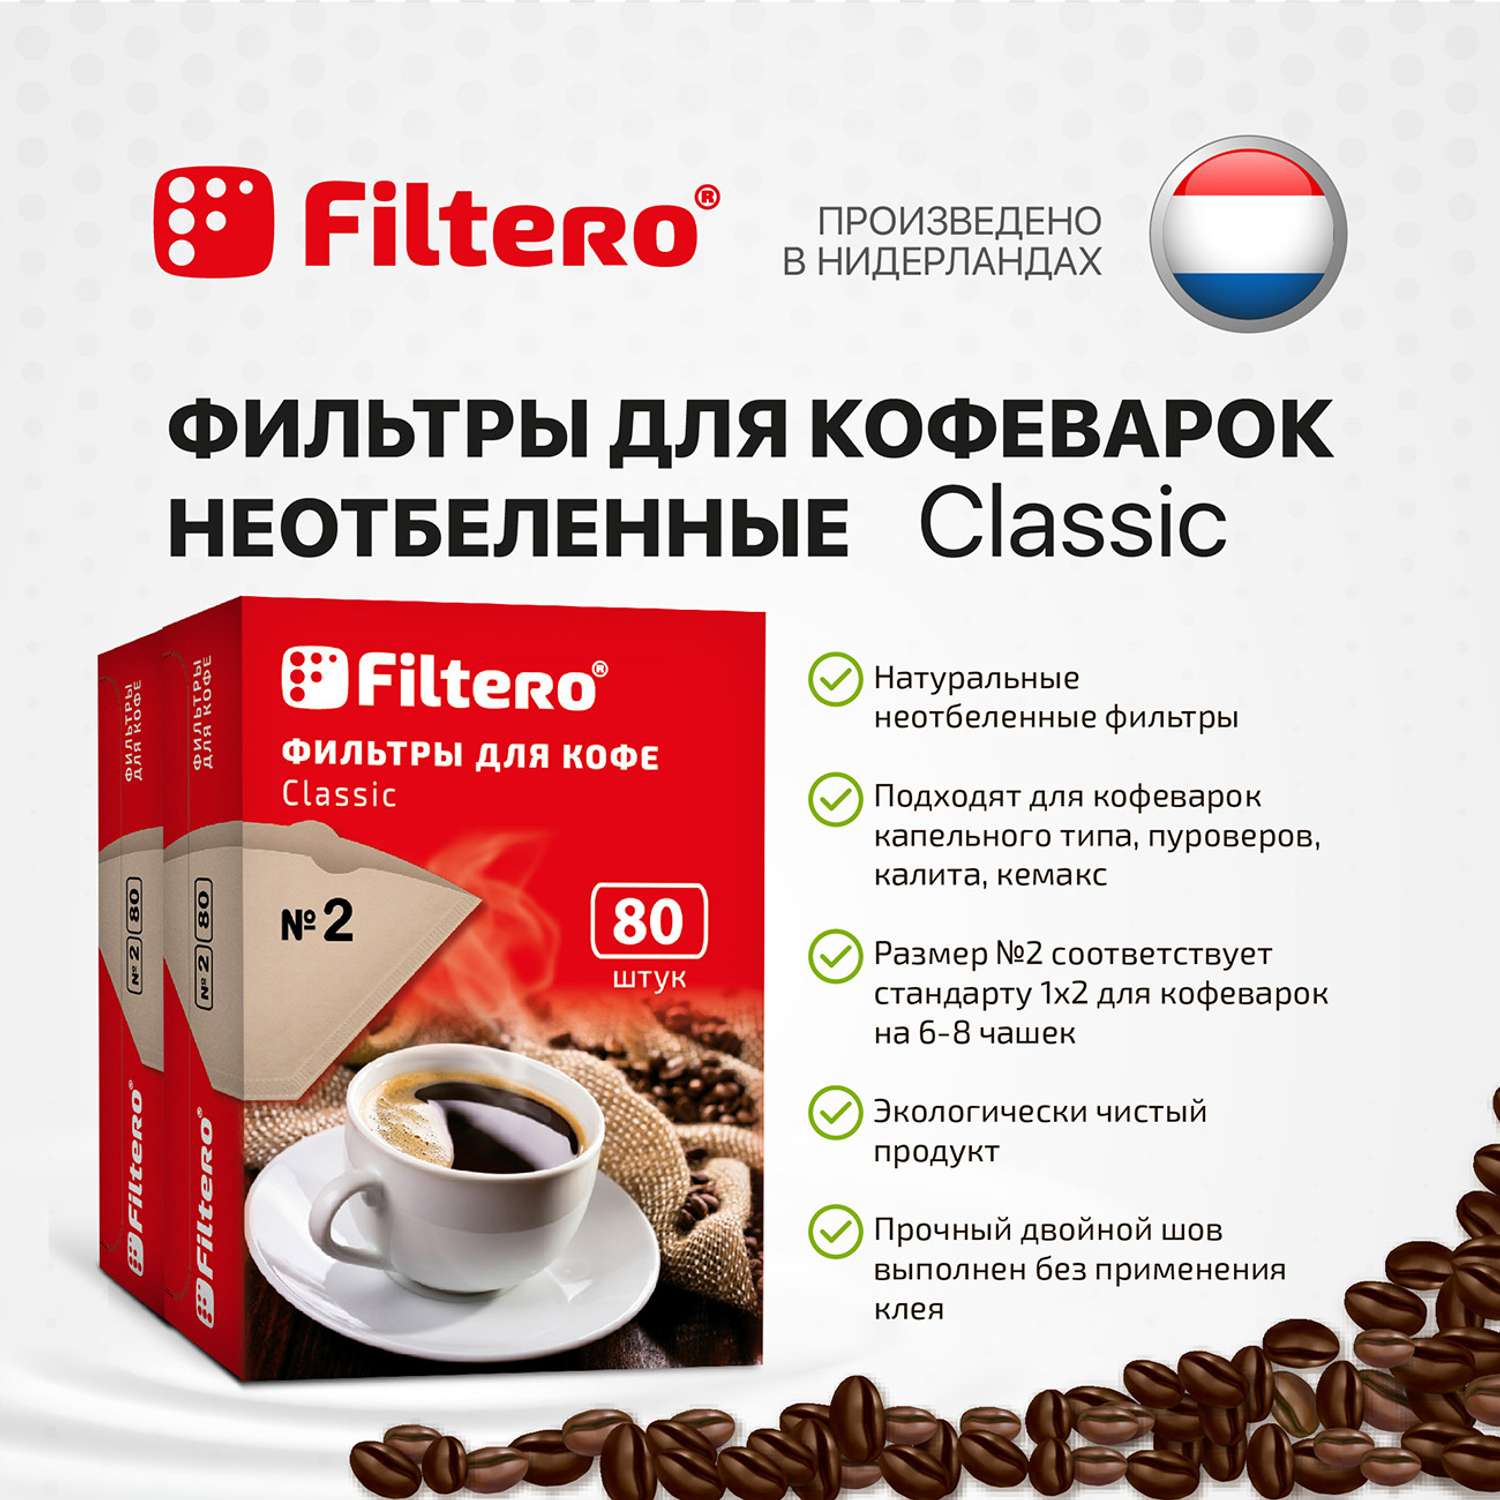 Комплект фильтров Filtero для кофеварки №2/160 коричневые Classic - фото 3